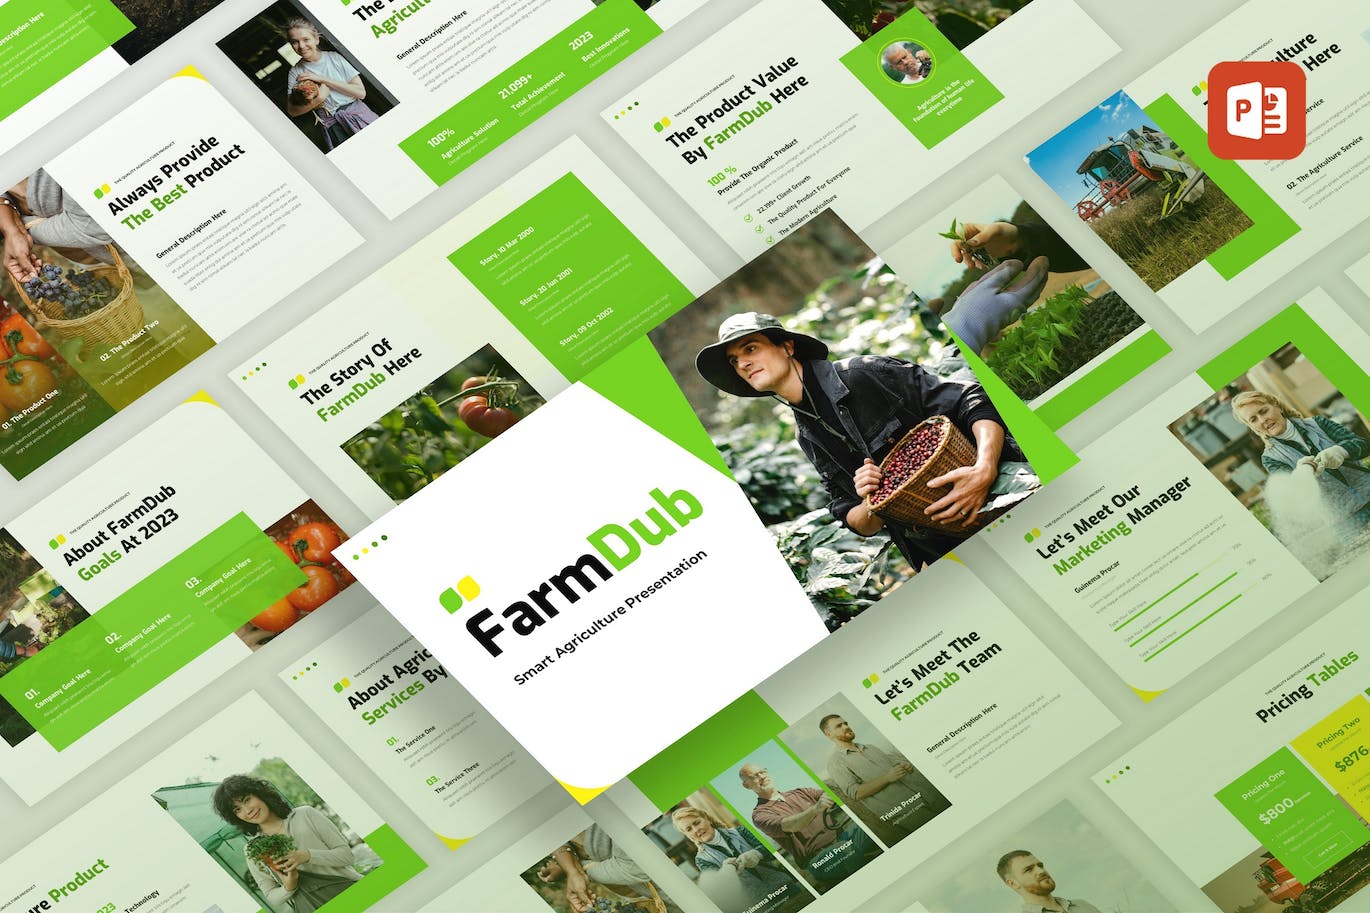 农业概况简介PowerPoint演示模板 FarmDub – Agriculture Profile PowerPoint Template 幻灯图表 第1张